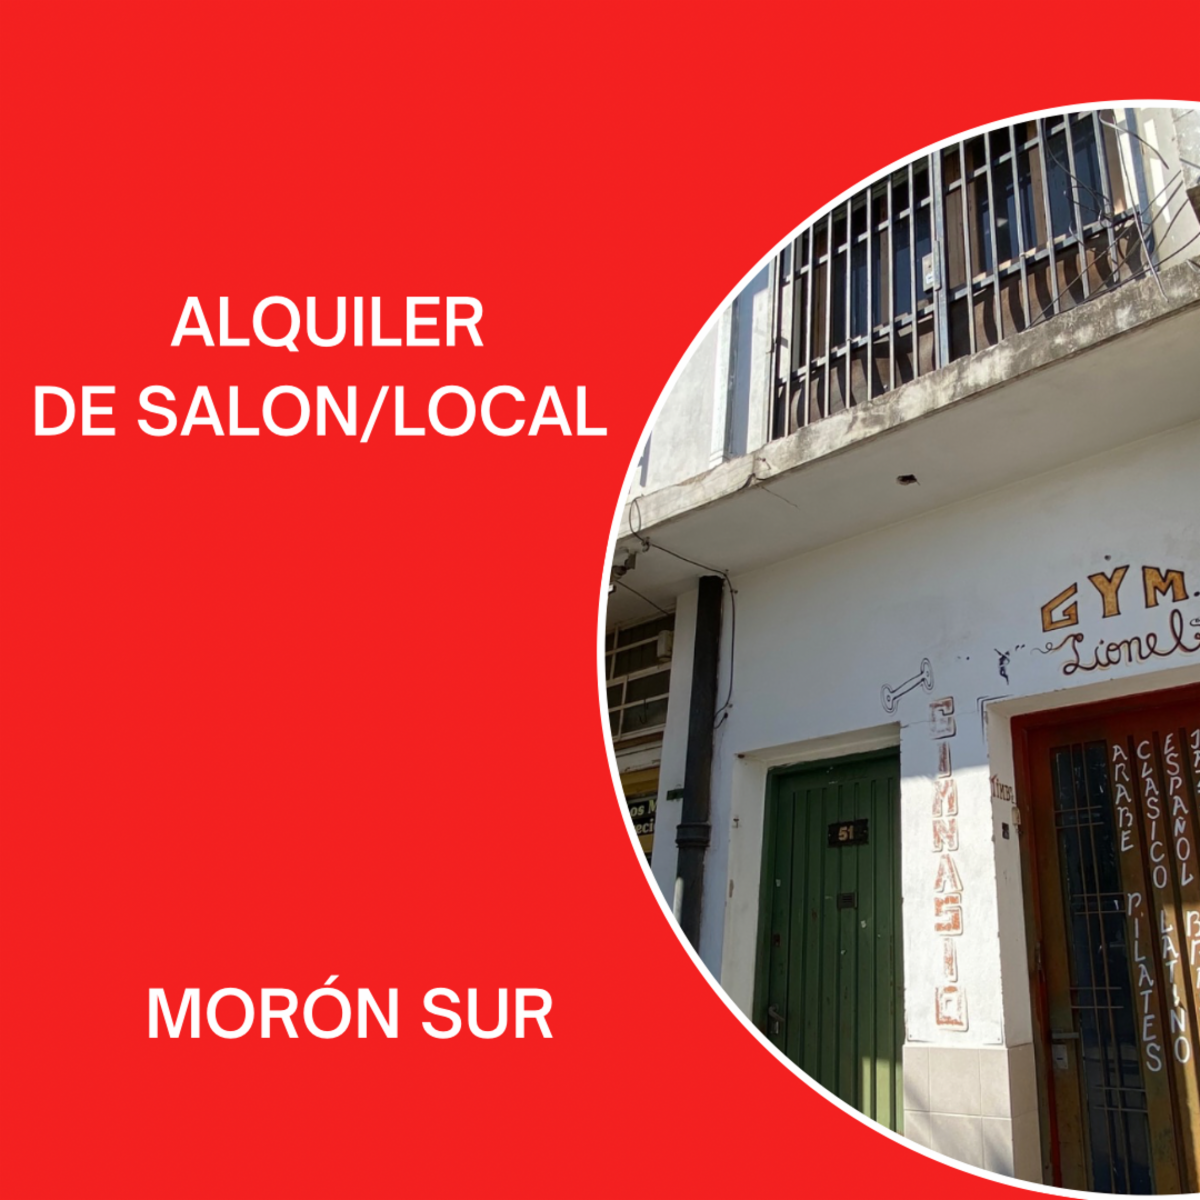 ALQUILER DE SALON/LOCAL